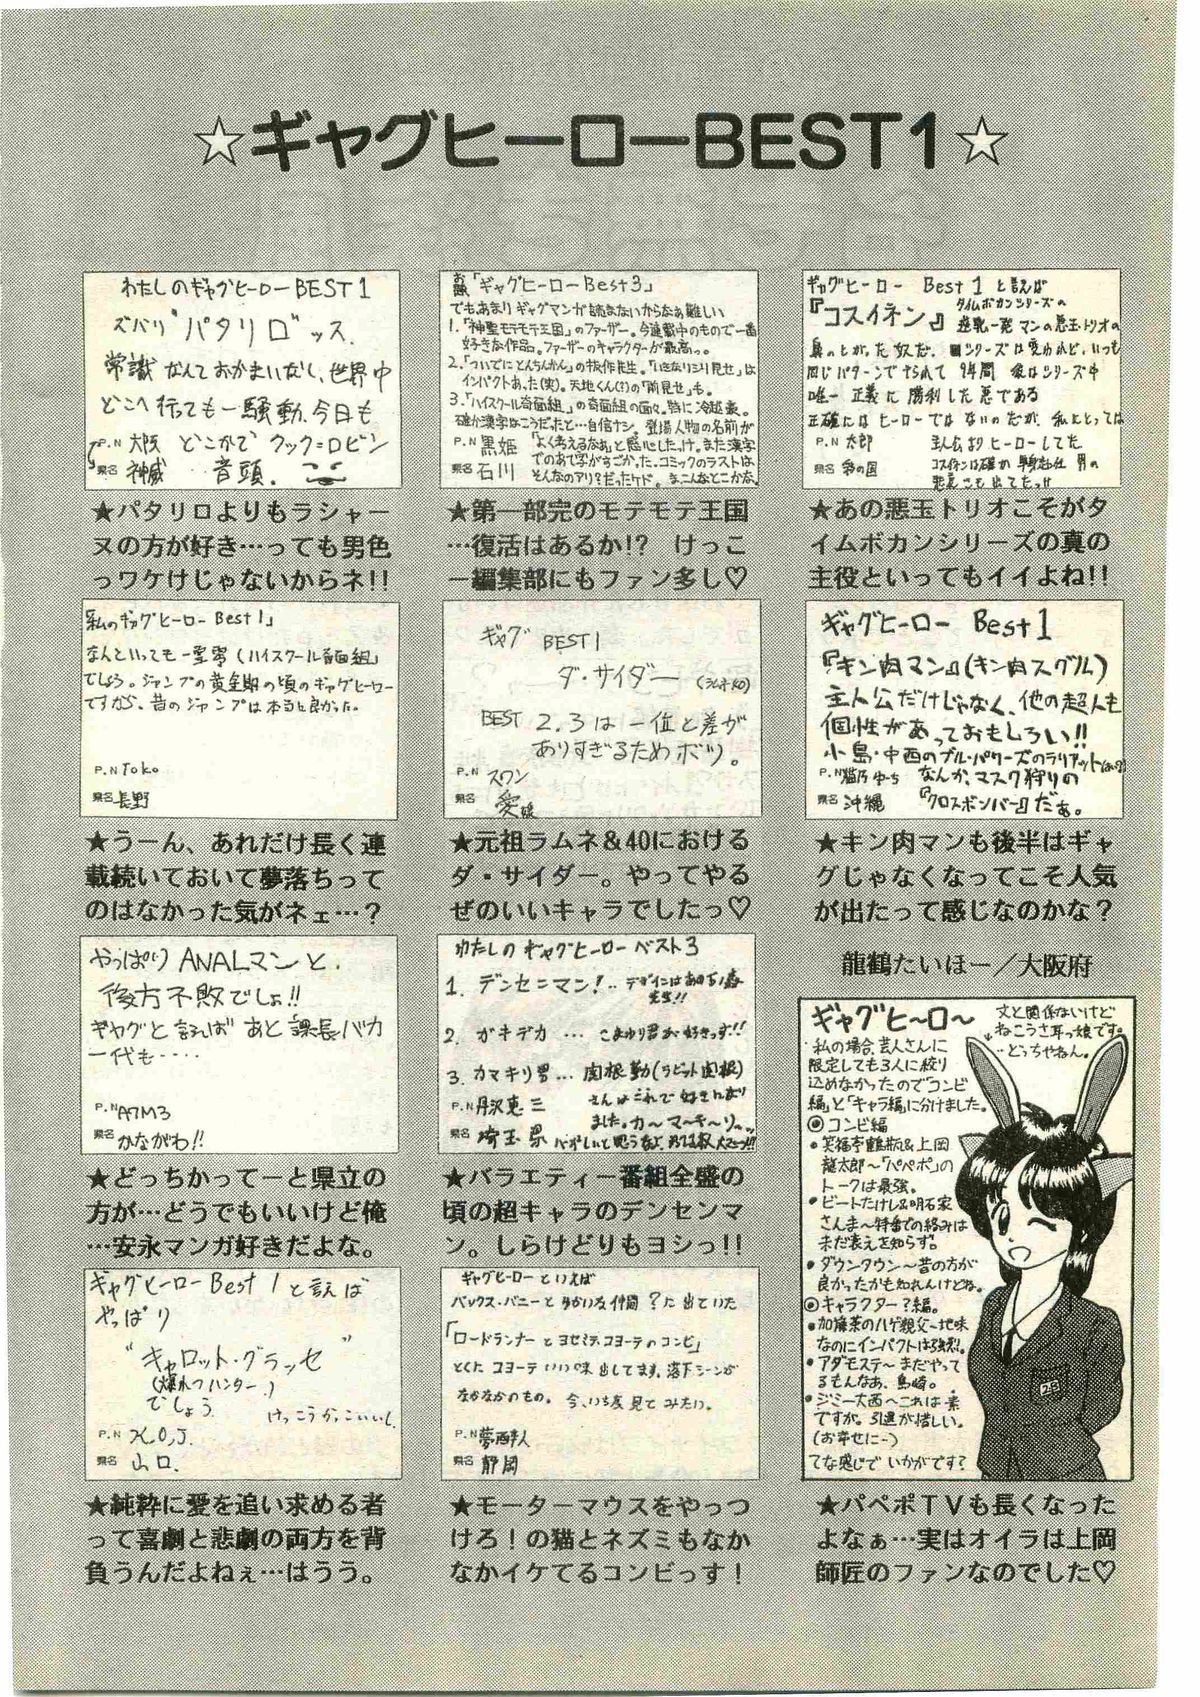 COMIC パピポ外伝 1998年3月号